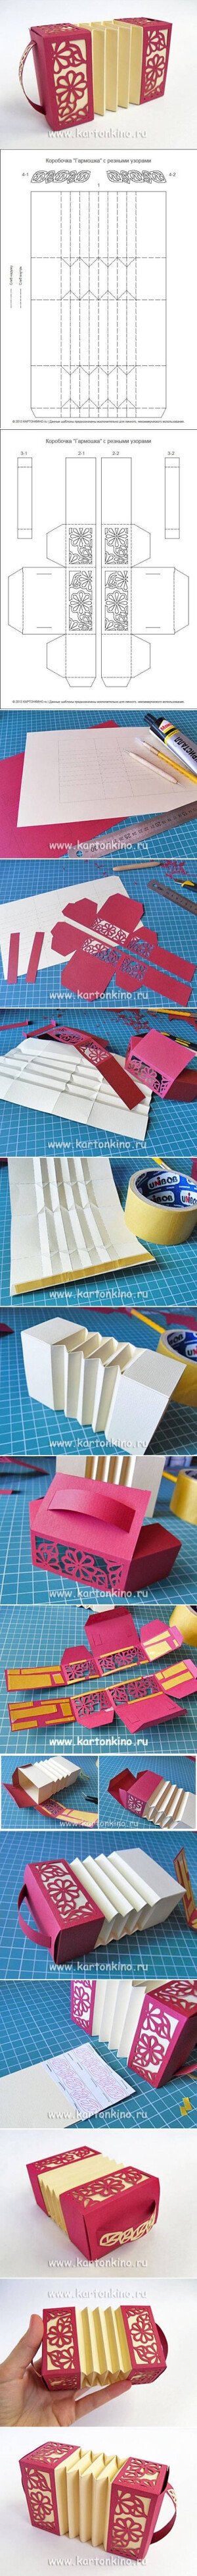 DIY Paper Harmonica Box DIY Paper Harmonica Box by diyforever